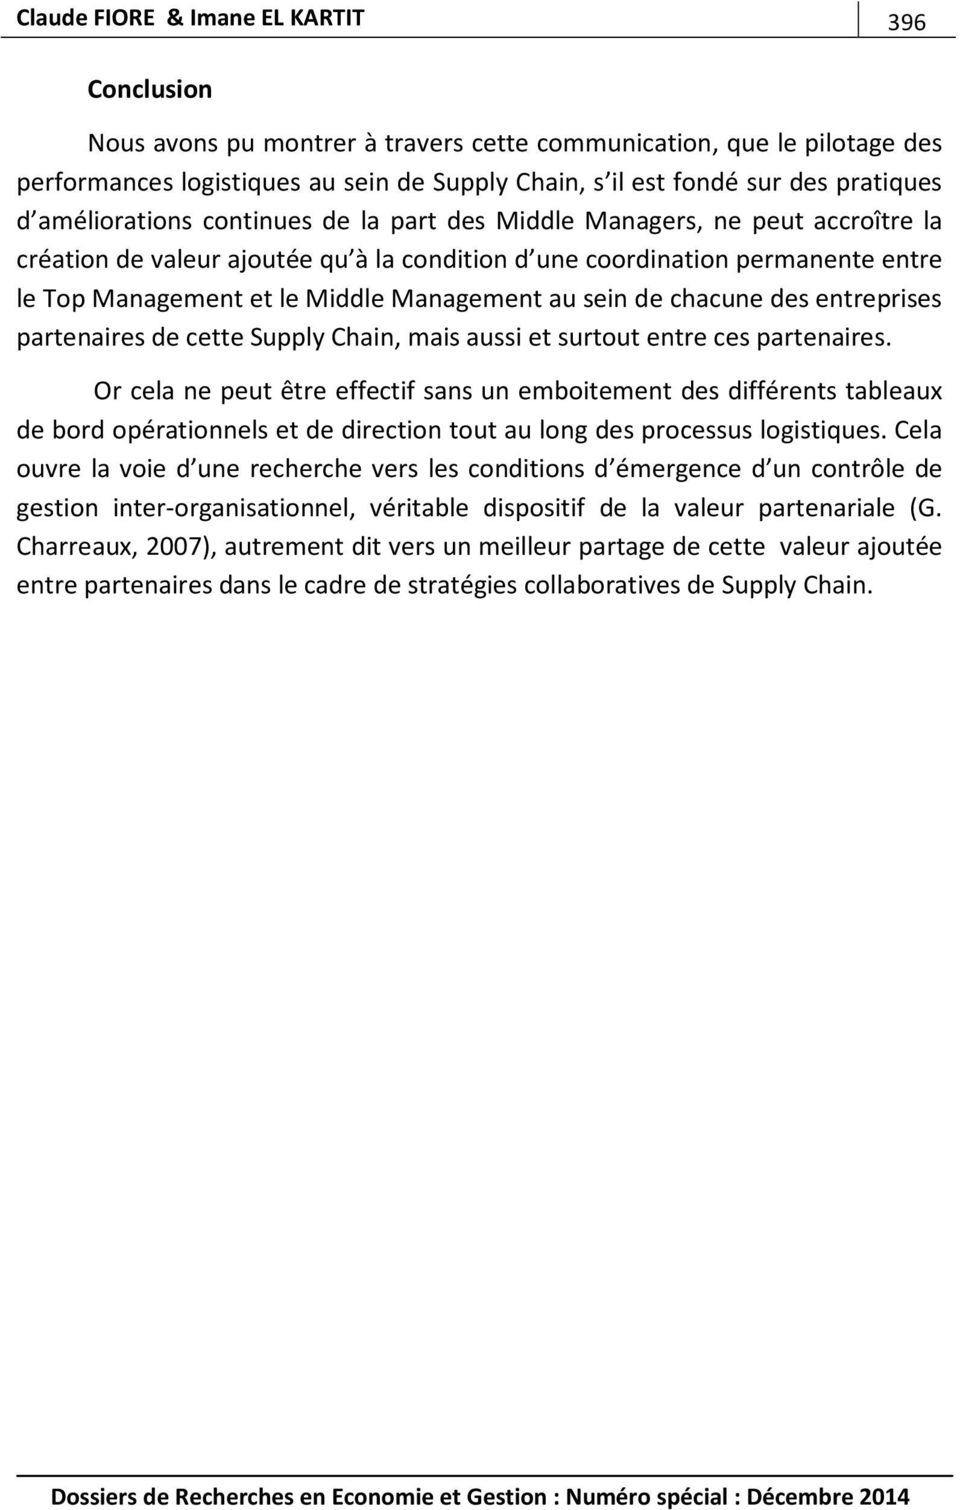 Middle Management au sein de chacune des entreprises partenaires de cette Supply Chain, mais aussi et surtout entre ces partenaires.